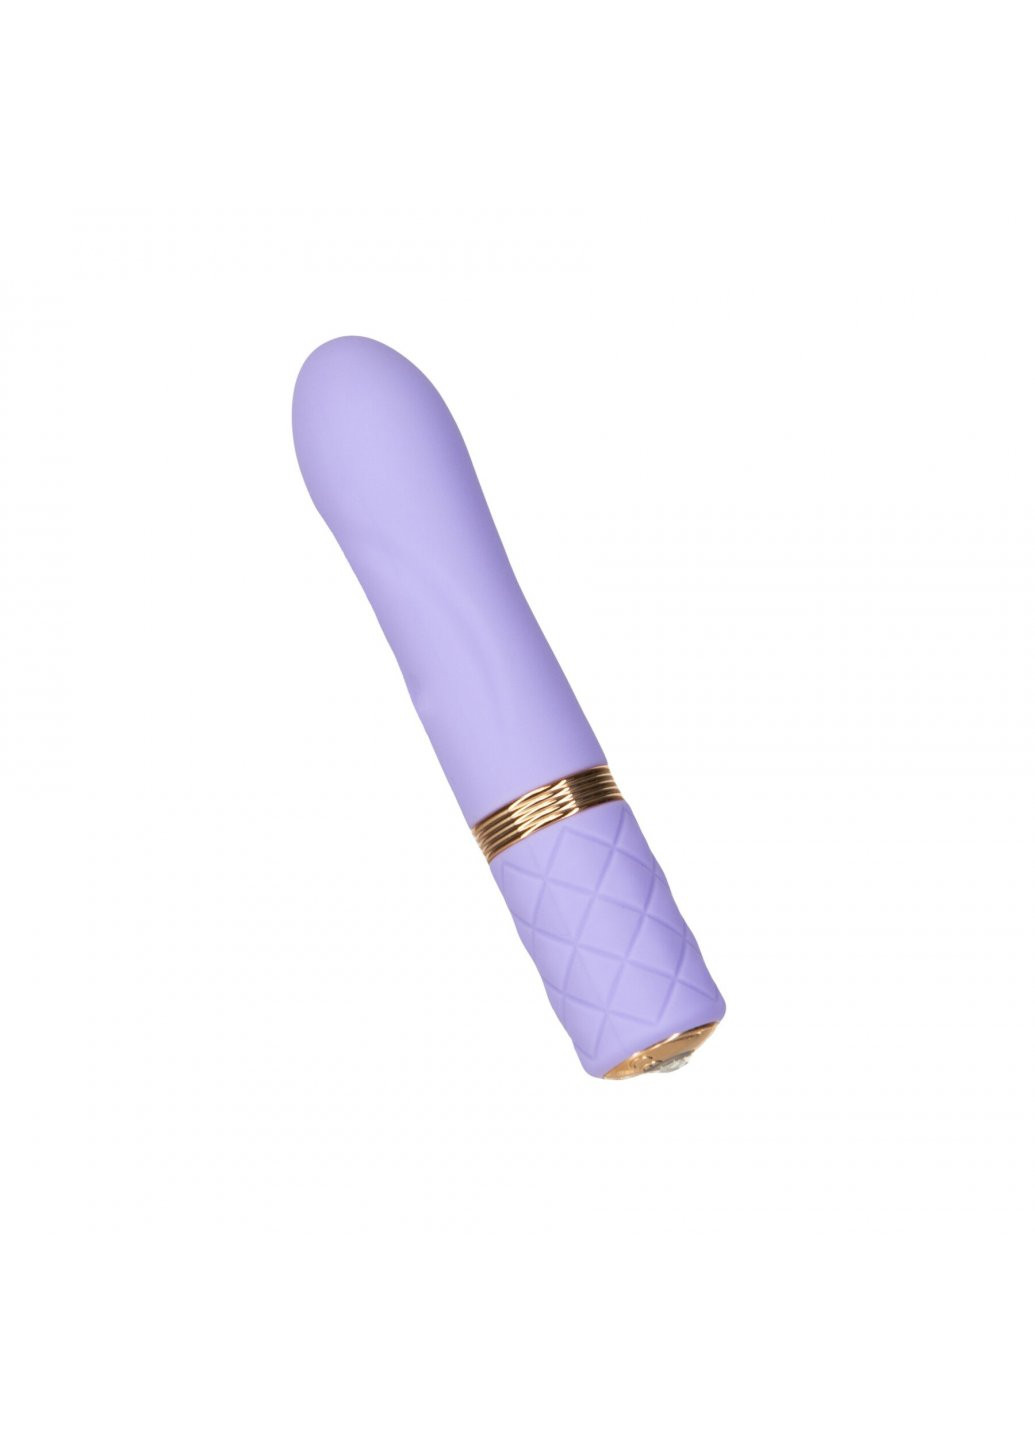 Роскошный вибратор - Special Edition Flirty Purple с кристаллом Сваровски Pillow Talk (259450121)